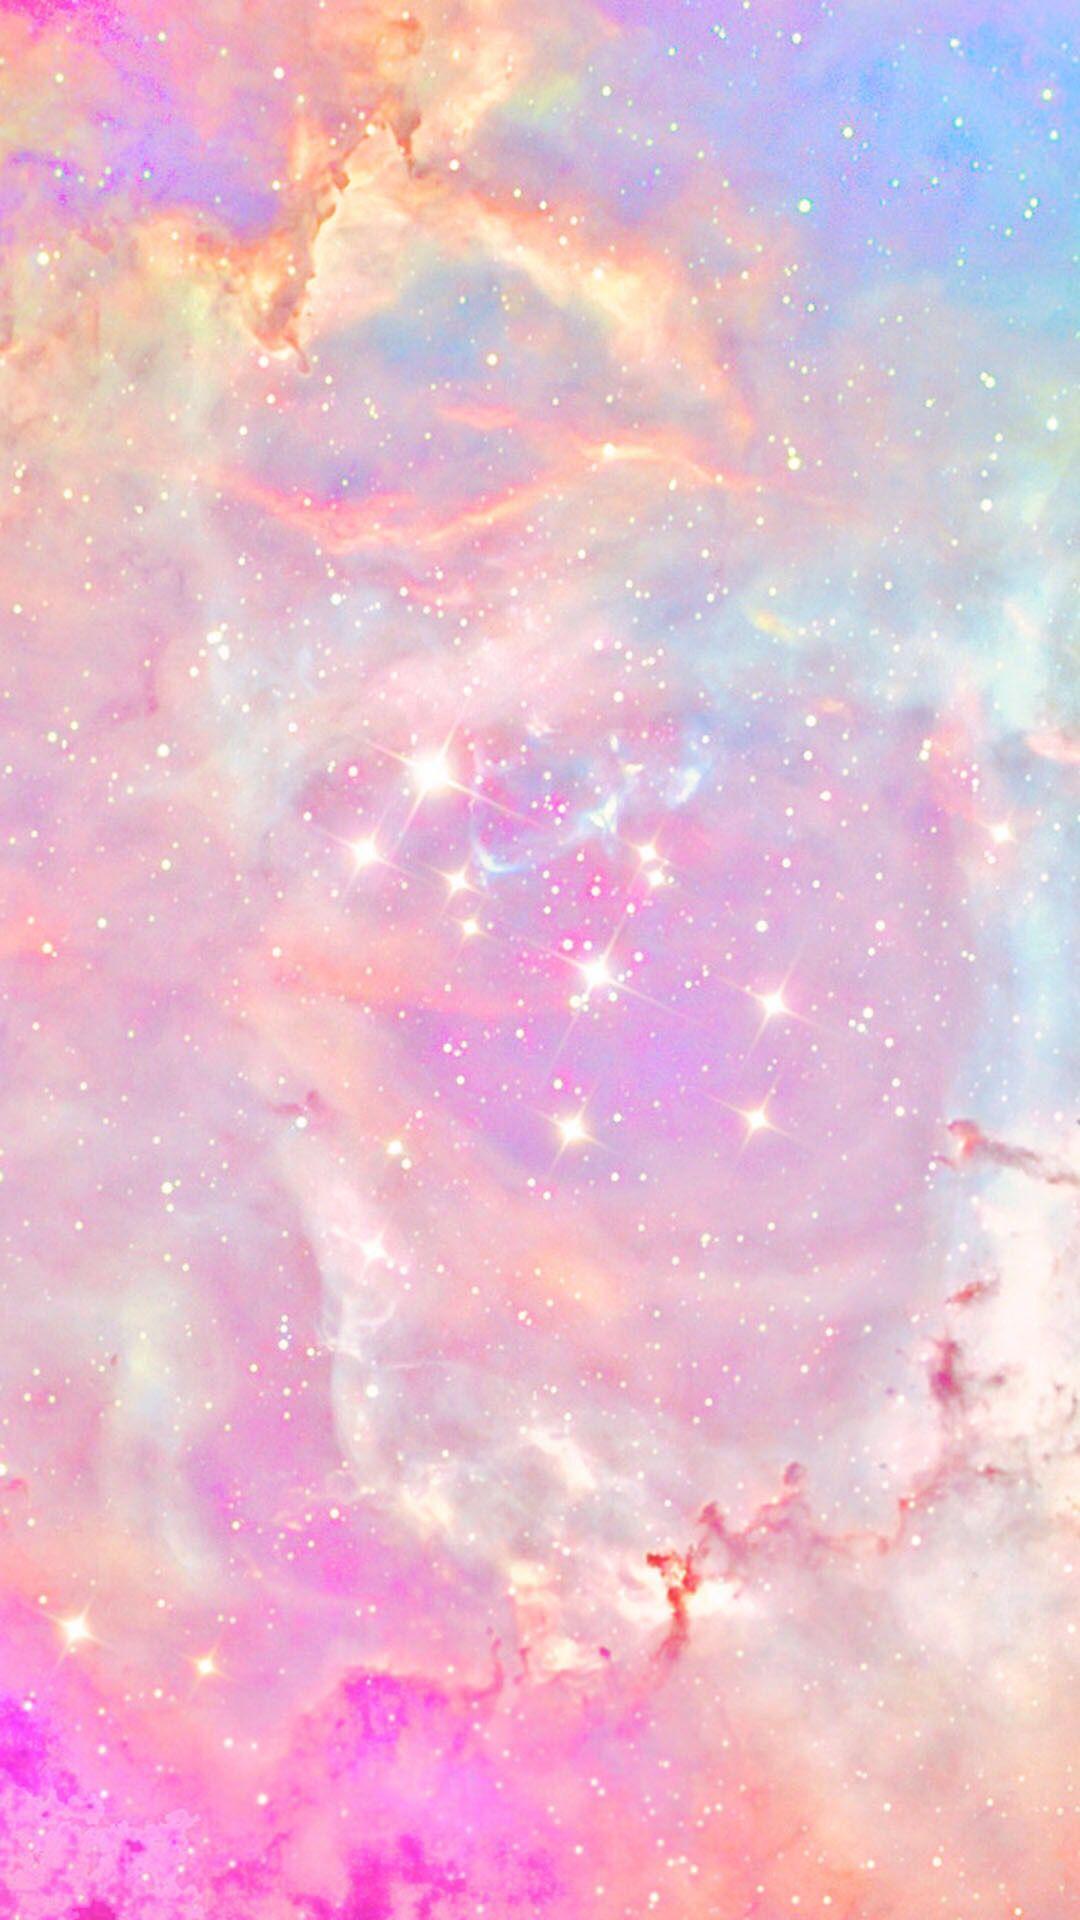 Hình nền thiên hà hồng nhạt: Hãy thư giãn và trải nghiệm cảm giác thăng hoa với hình nền thiên hà hồng nhạt. Sắc màu nhẹ nhàng và phối hợp hài hòa giữa những tinh vân mờ mịt sẽ khiến bạn đắm chìm vào vẻ đẹp hoang sơ của không gian bao la.